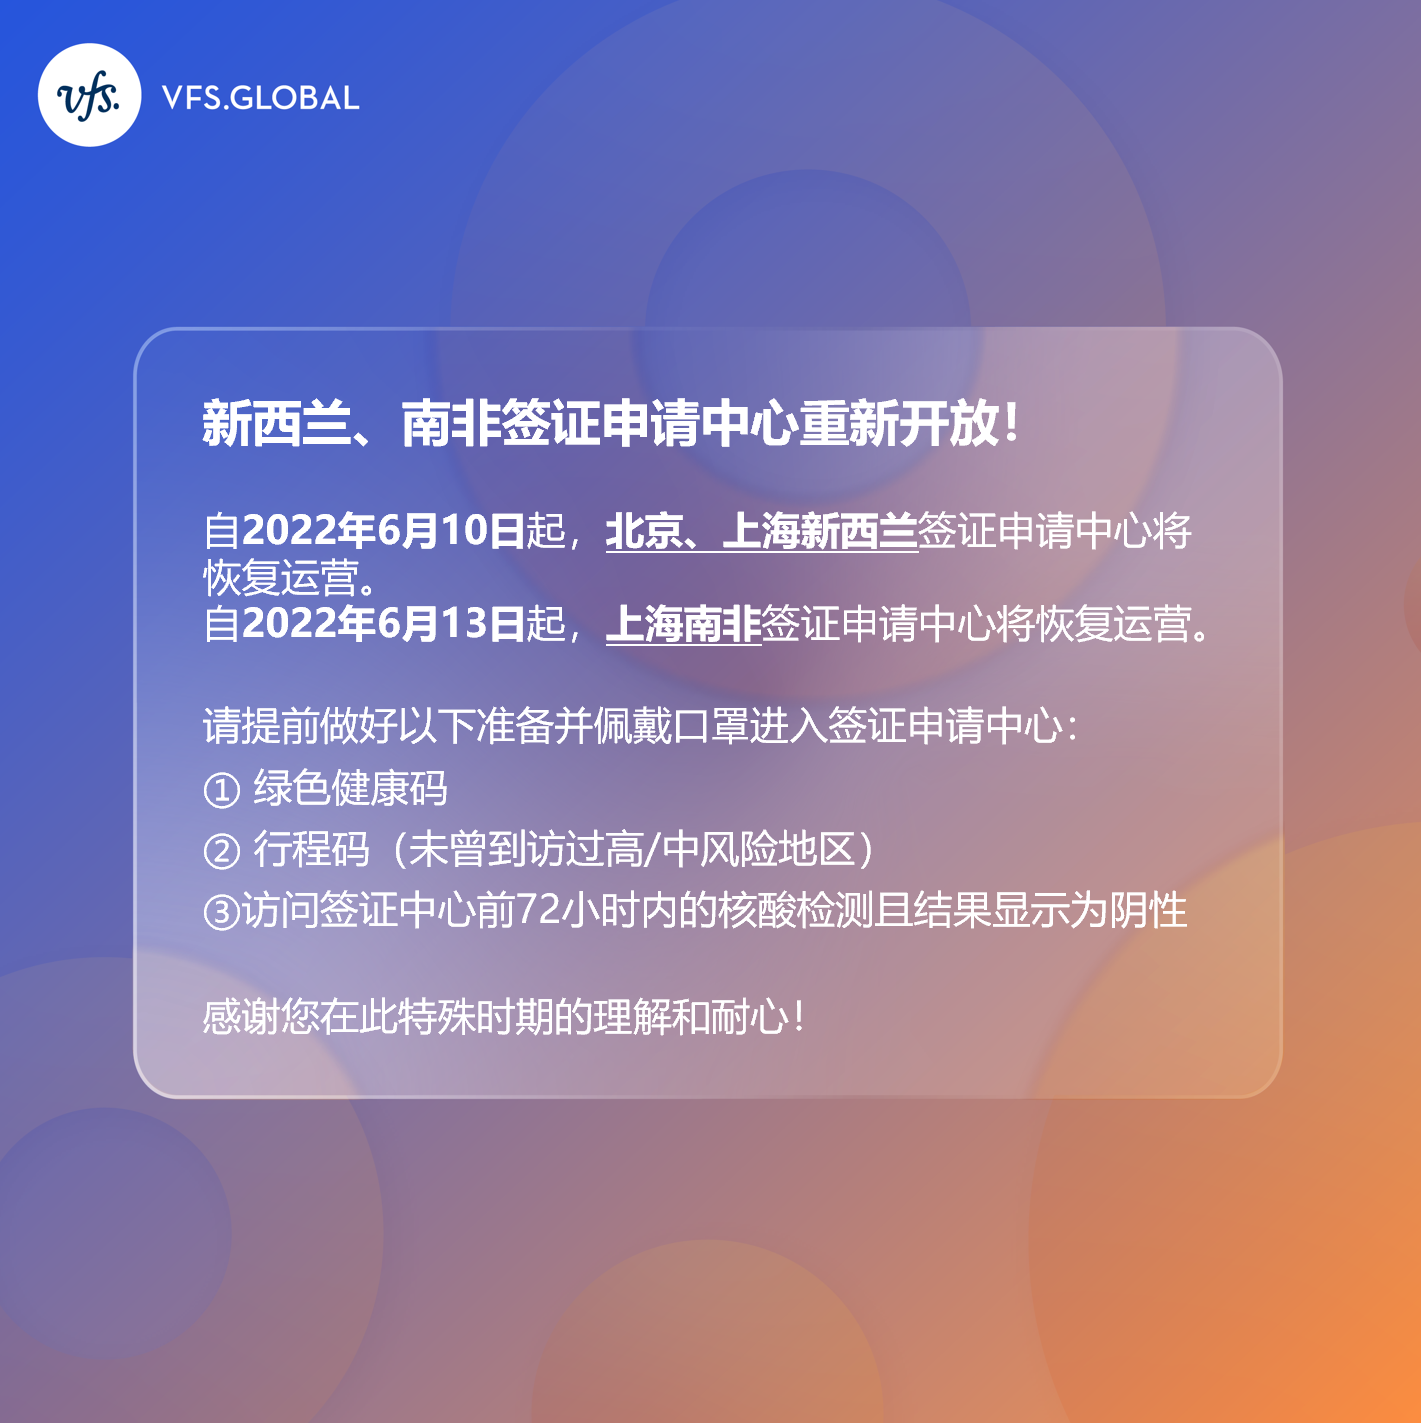 北京和上海已开放签证中心信息汇总